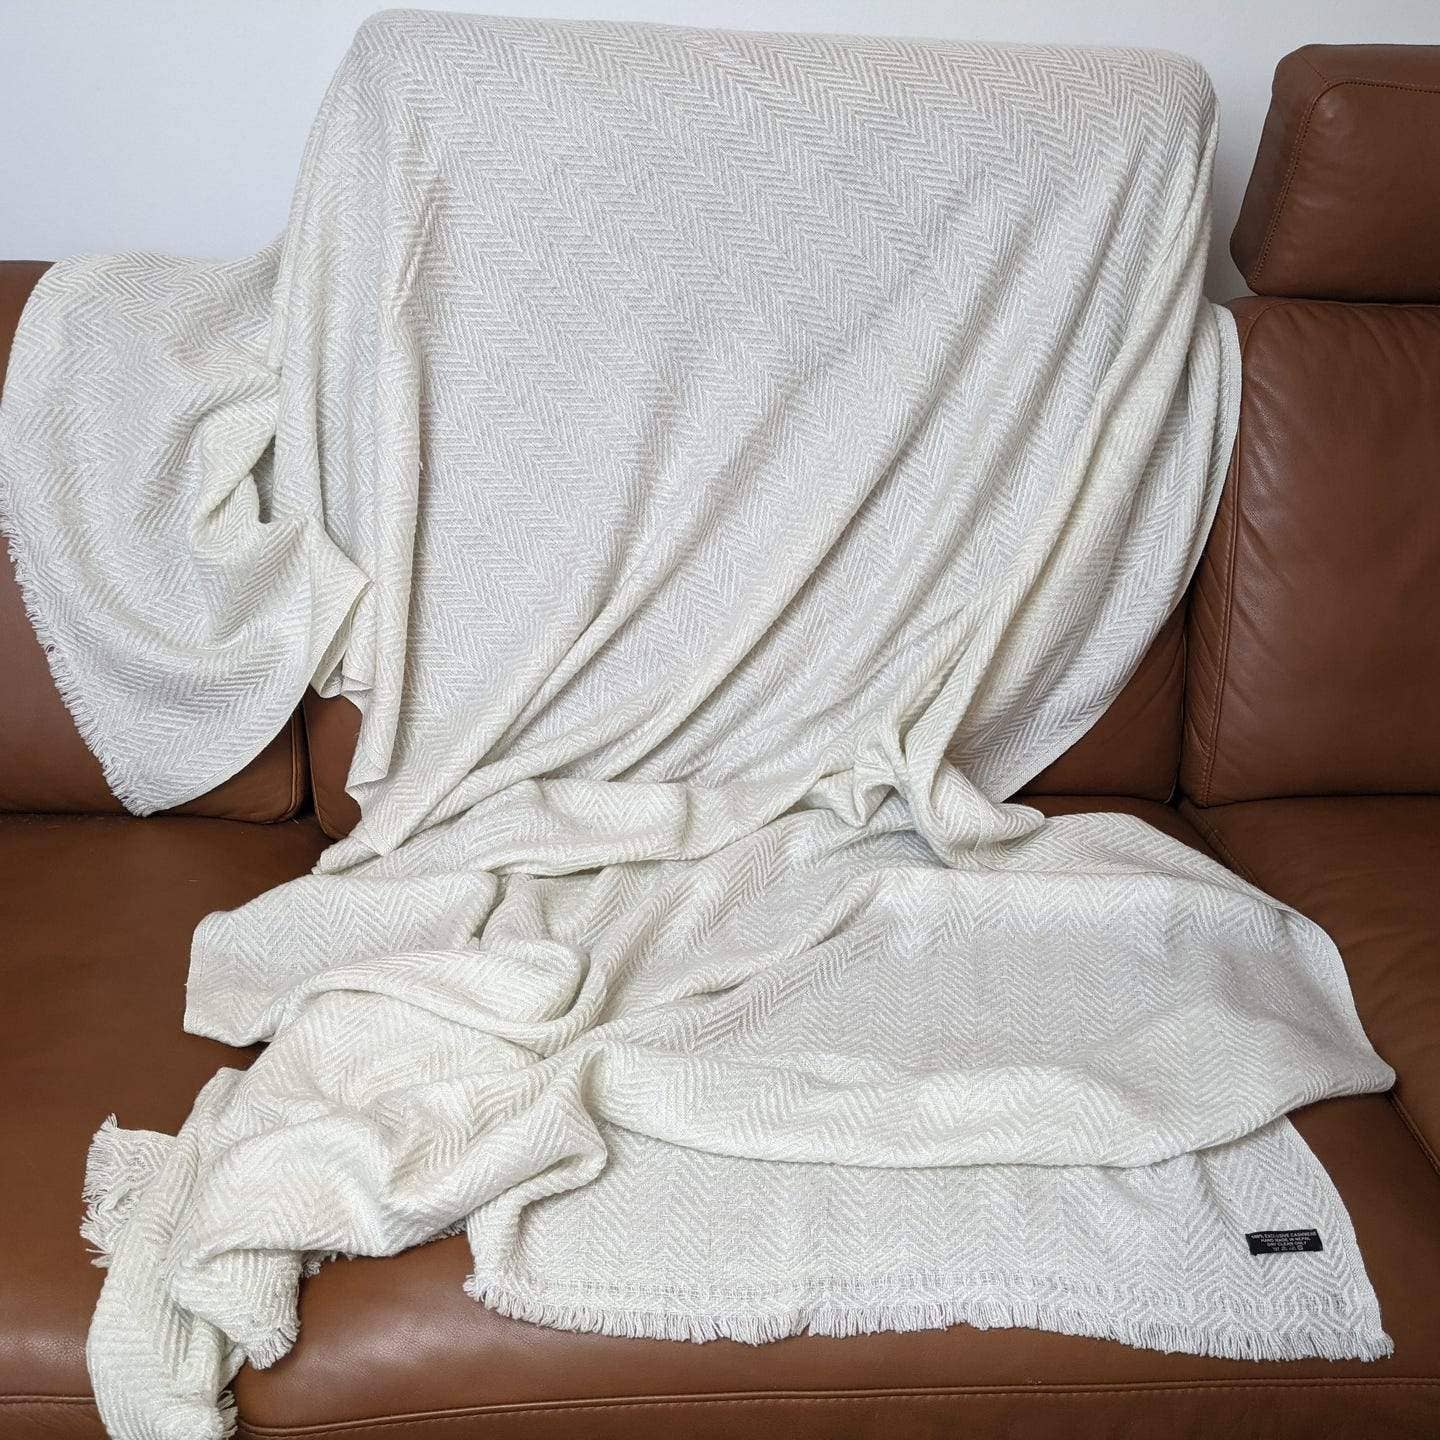 Cashmere Blanket in white herringbone